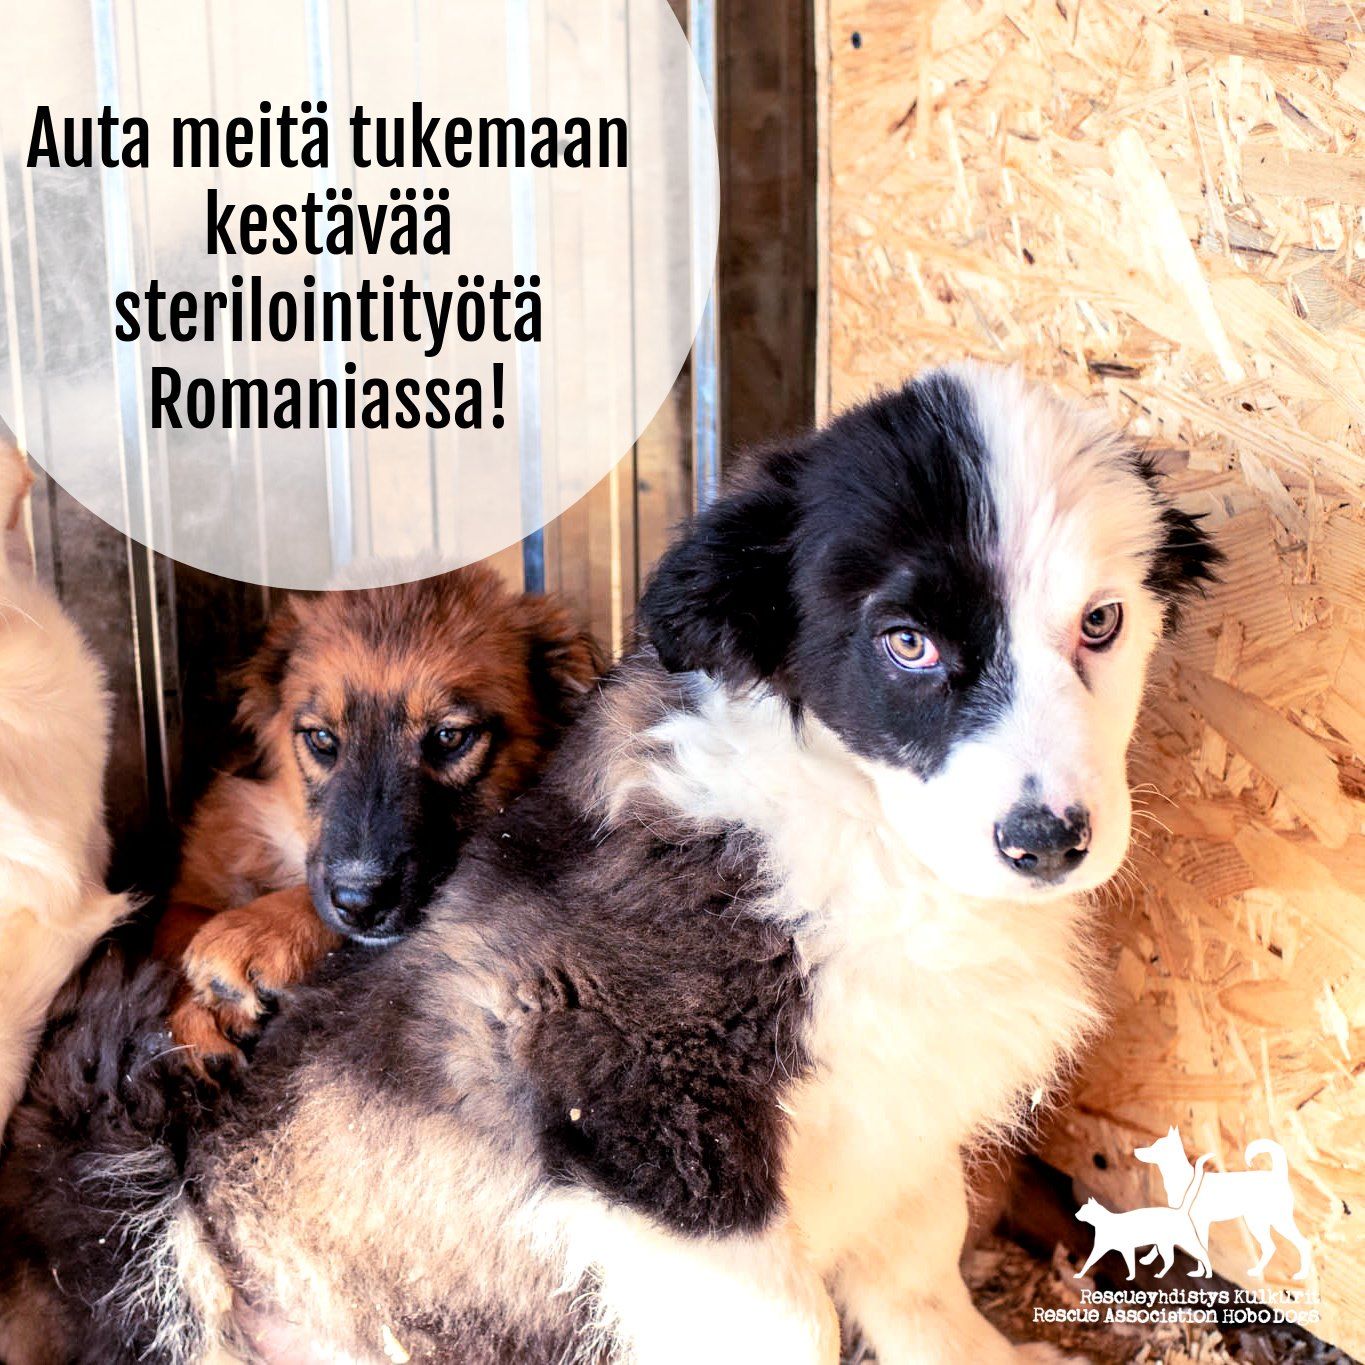 Auta meitä tukemaan kestävää sterilointityötä Romaniassa!